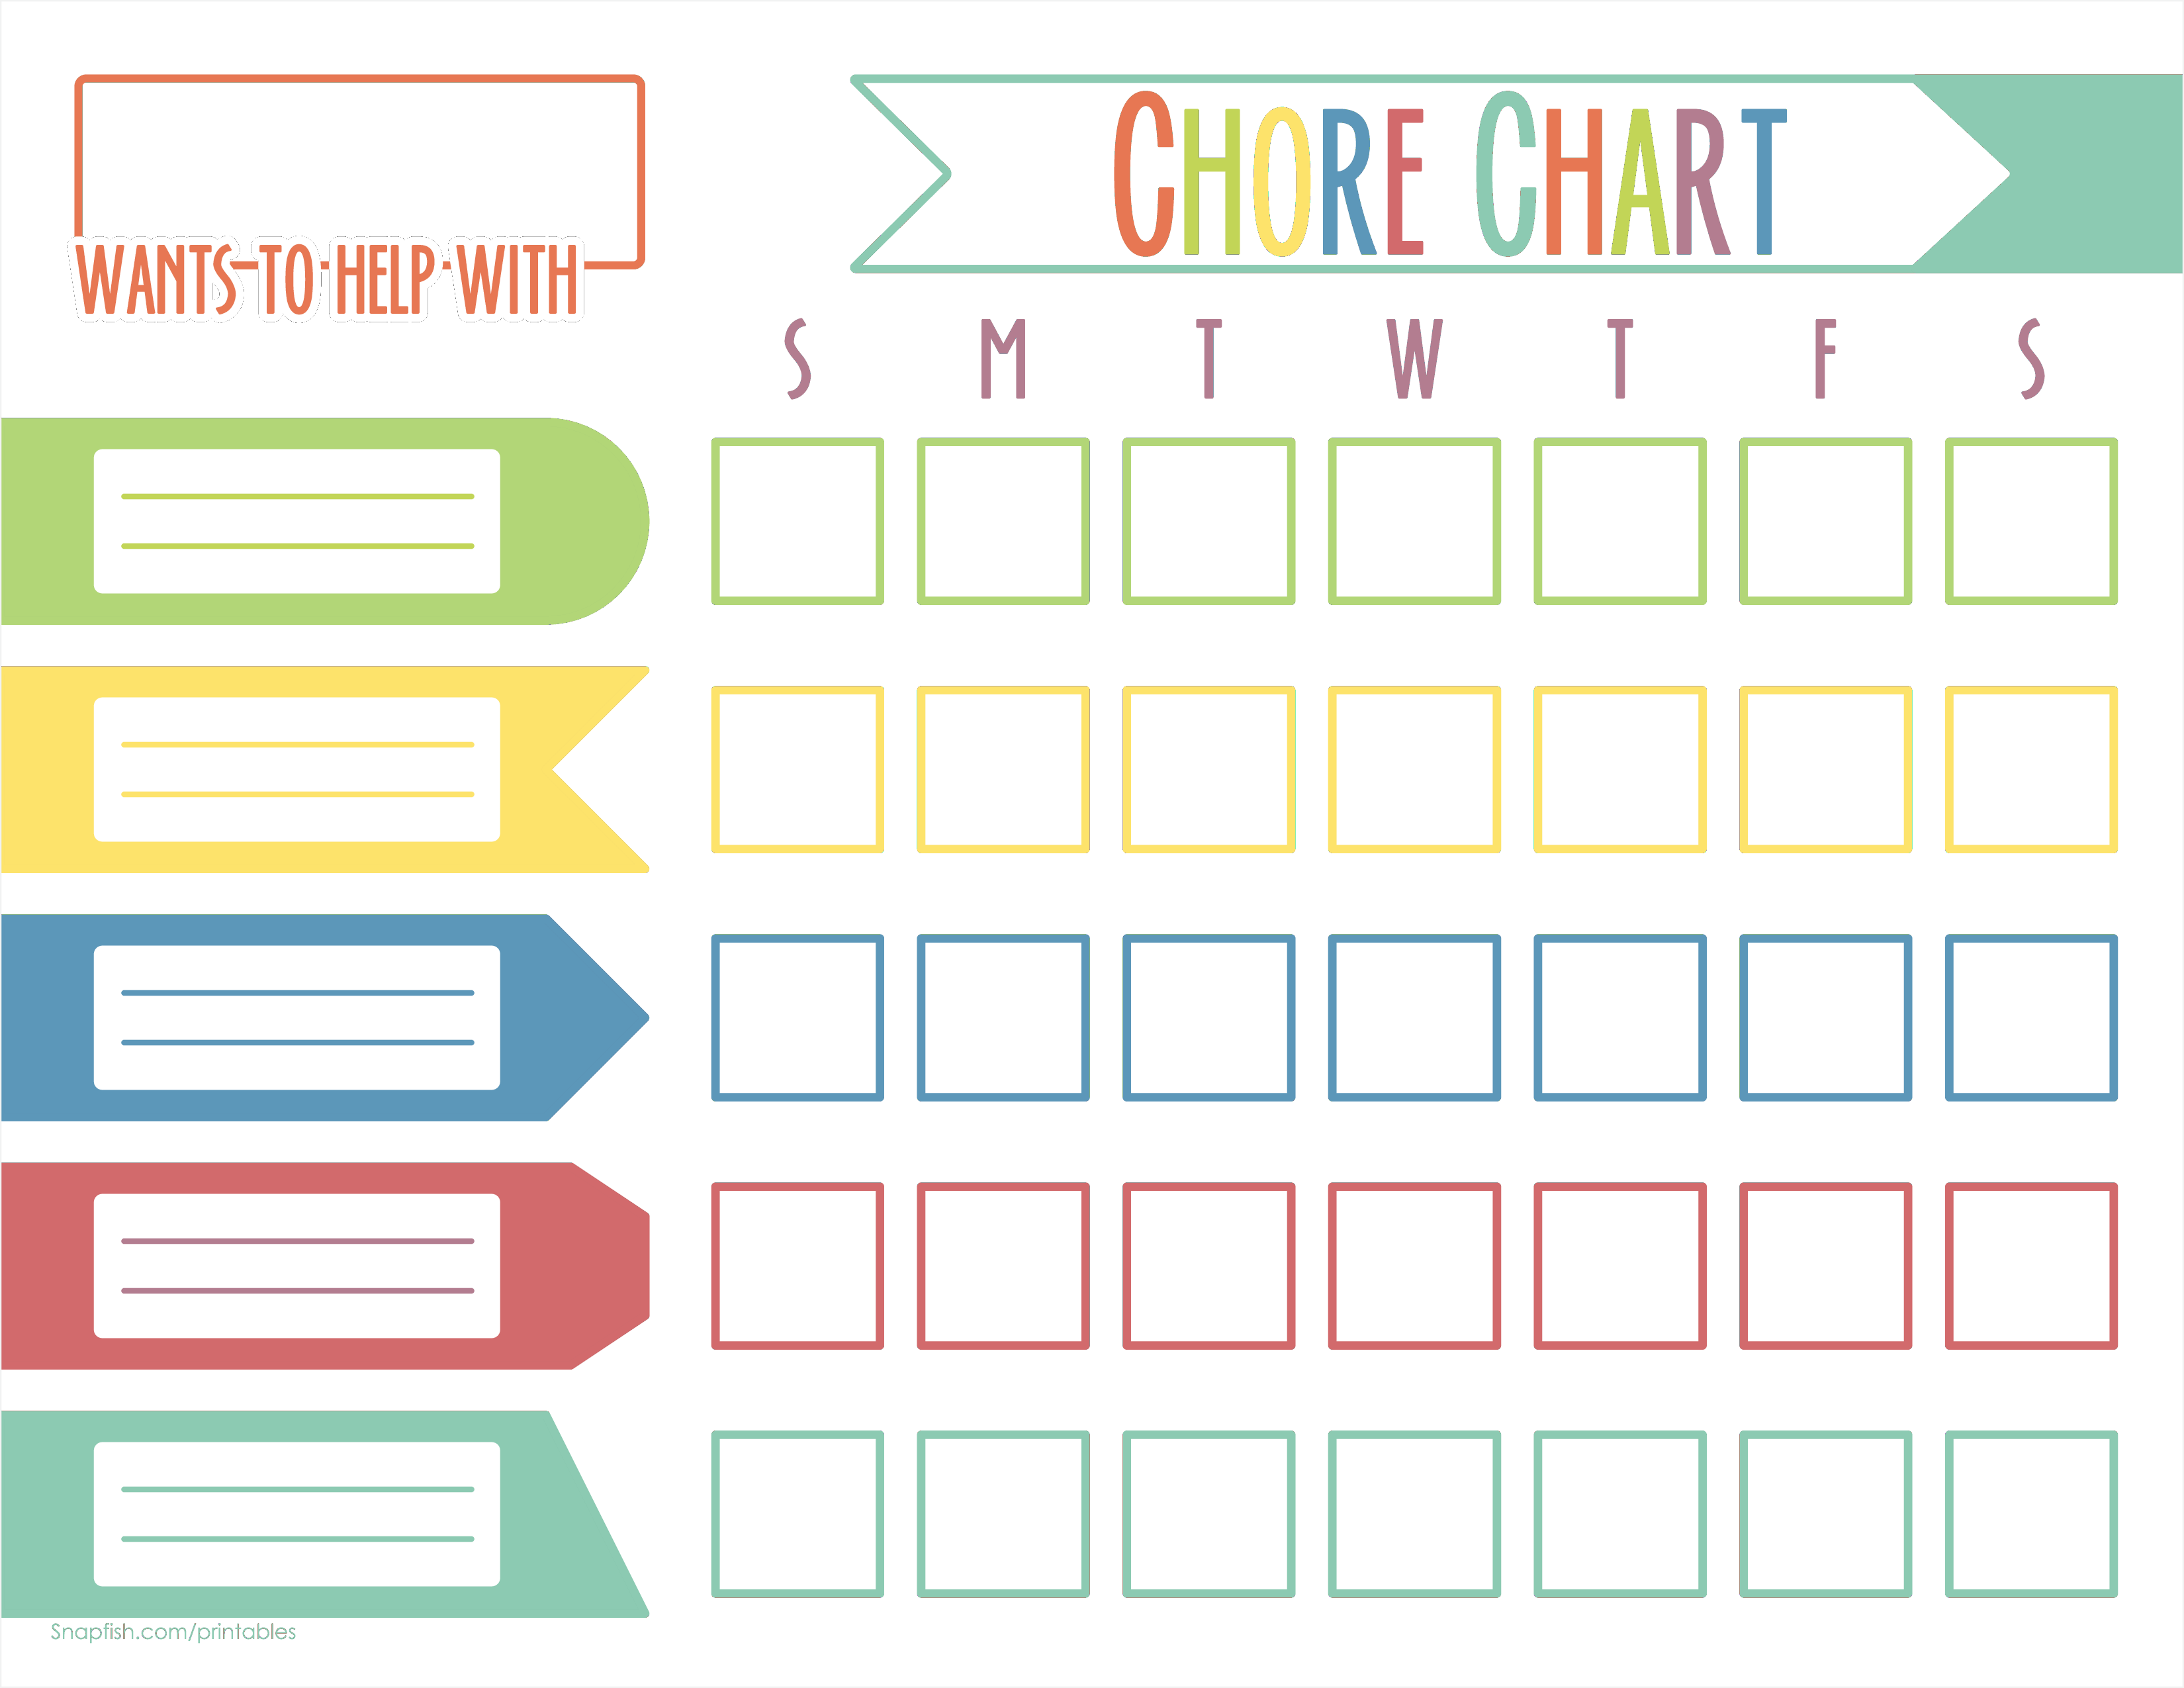 chore-chart-for-kids-allbusinesstemplates